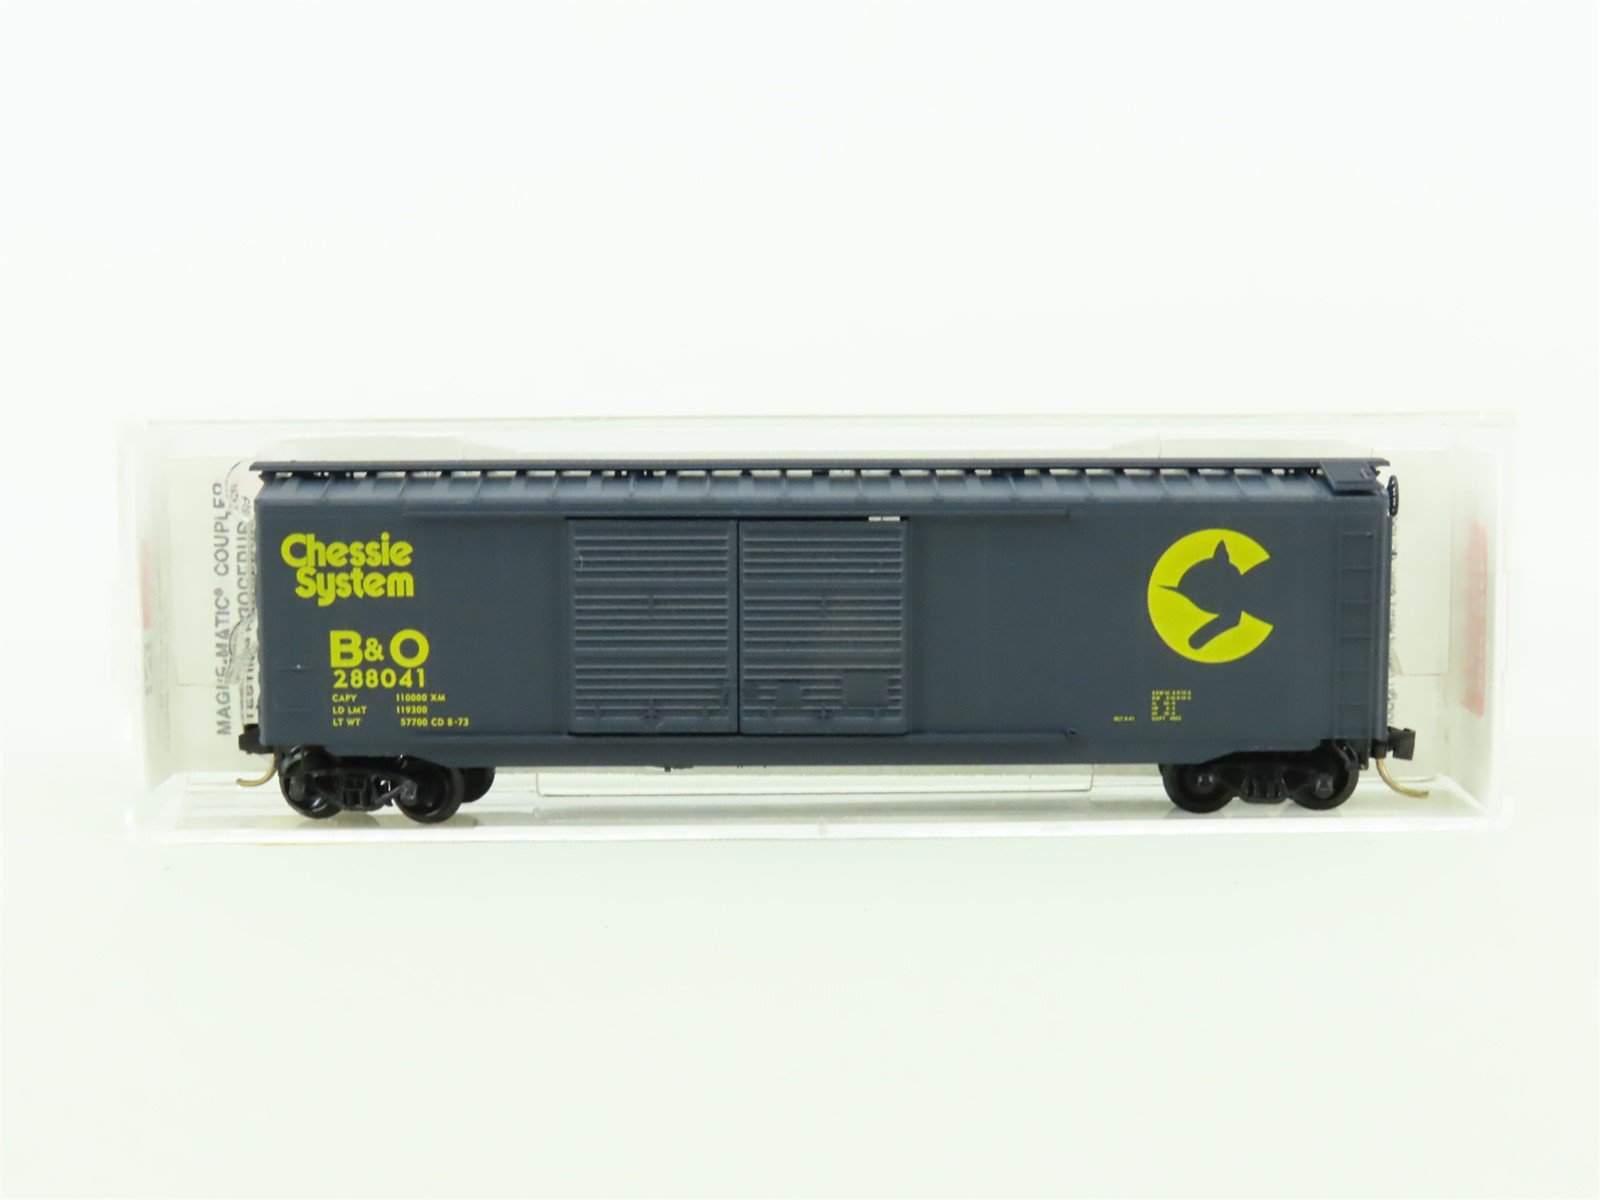 N Scale Micro-Trains MTL #34010 B&O Chessie System 50' Box Car #288041